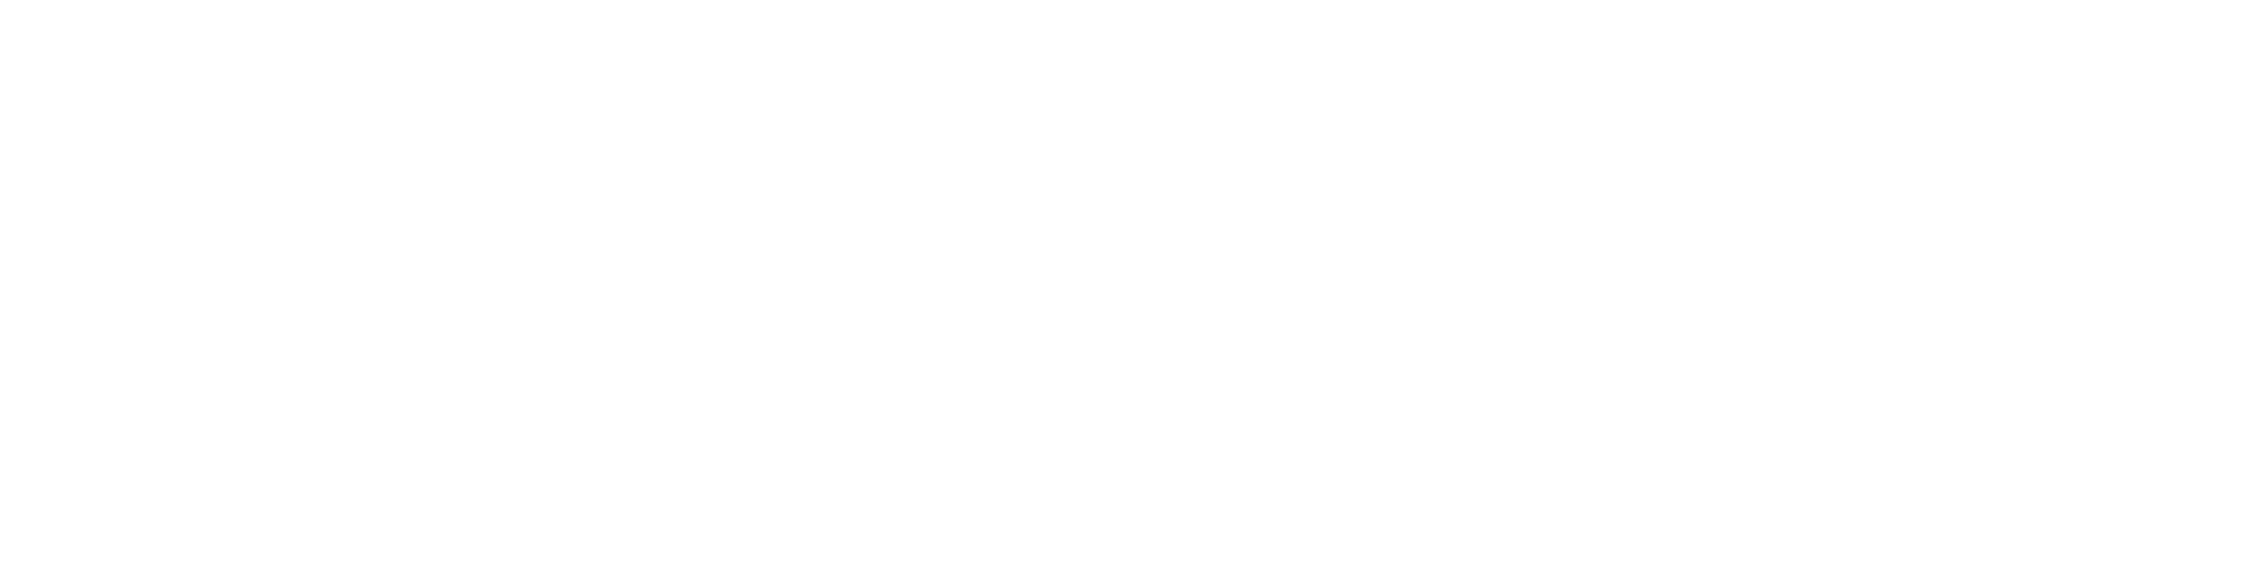 TEXTFITRE Technical Fabrics